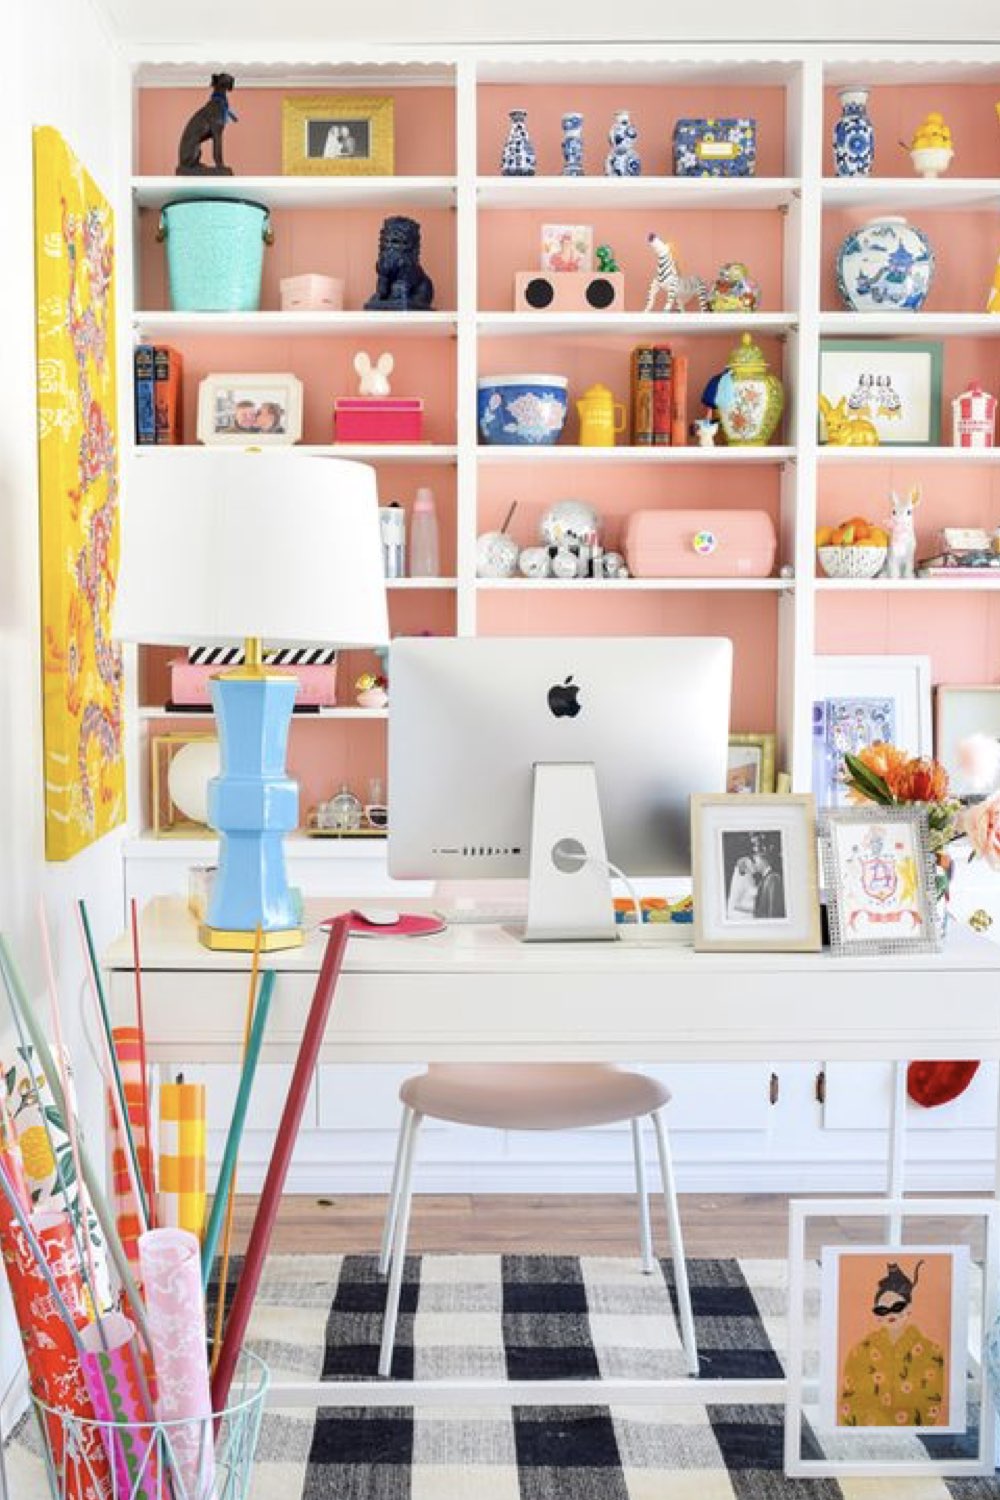 amenager une piece bureau bibliotheque grand meuble blanc sur tout un mur tapis noir et blanc couleur rose turquoise jaune tableau lampe de travail